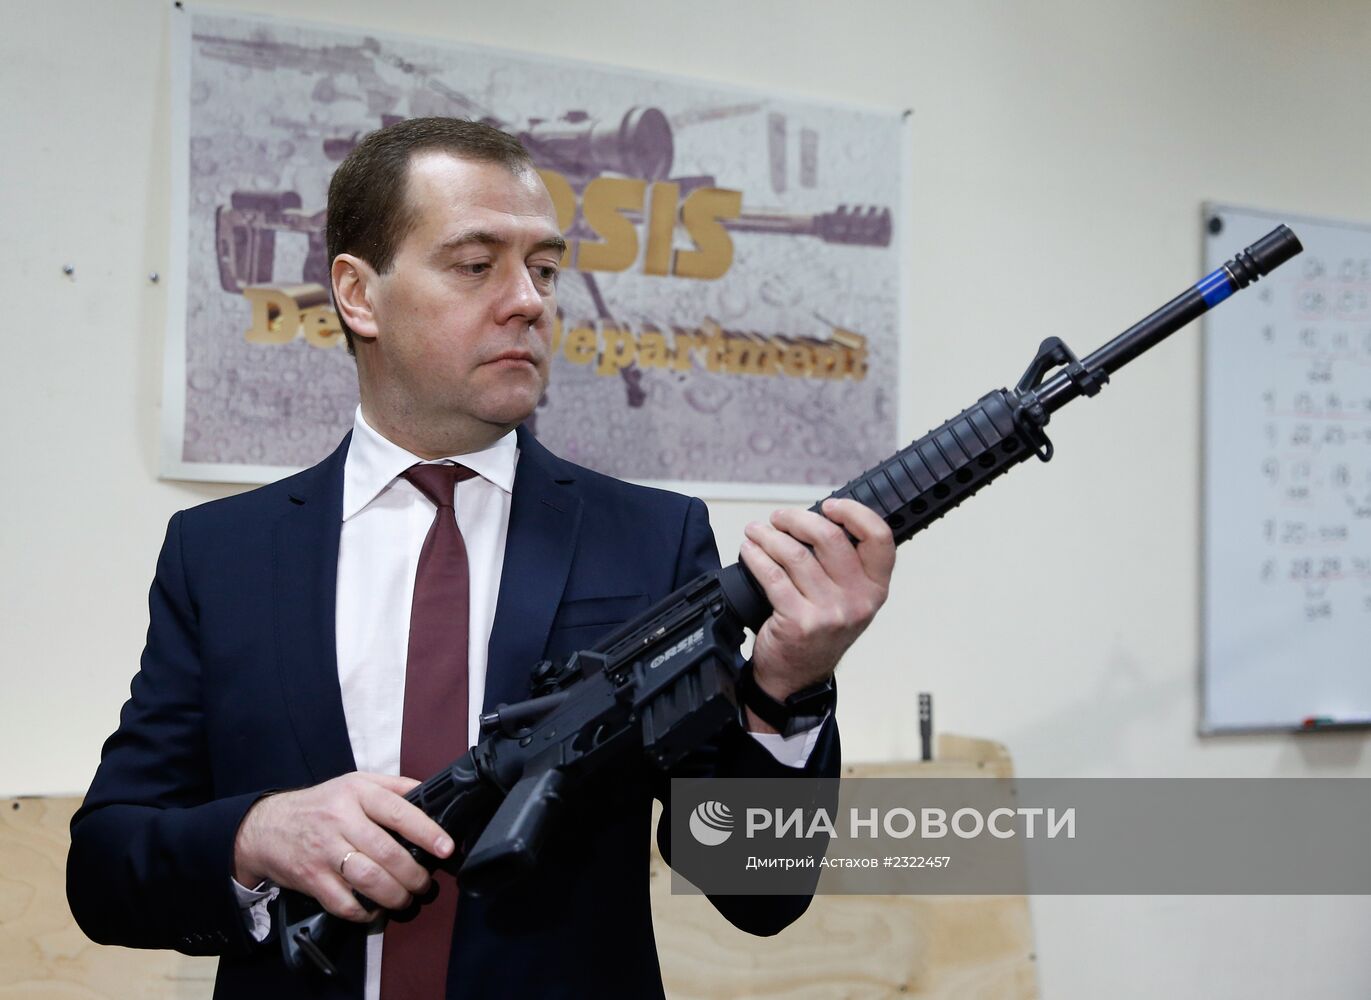 Д.Медведев посетил ООО "Промтехнология"